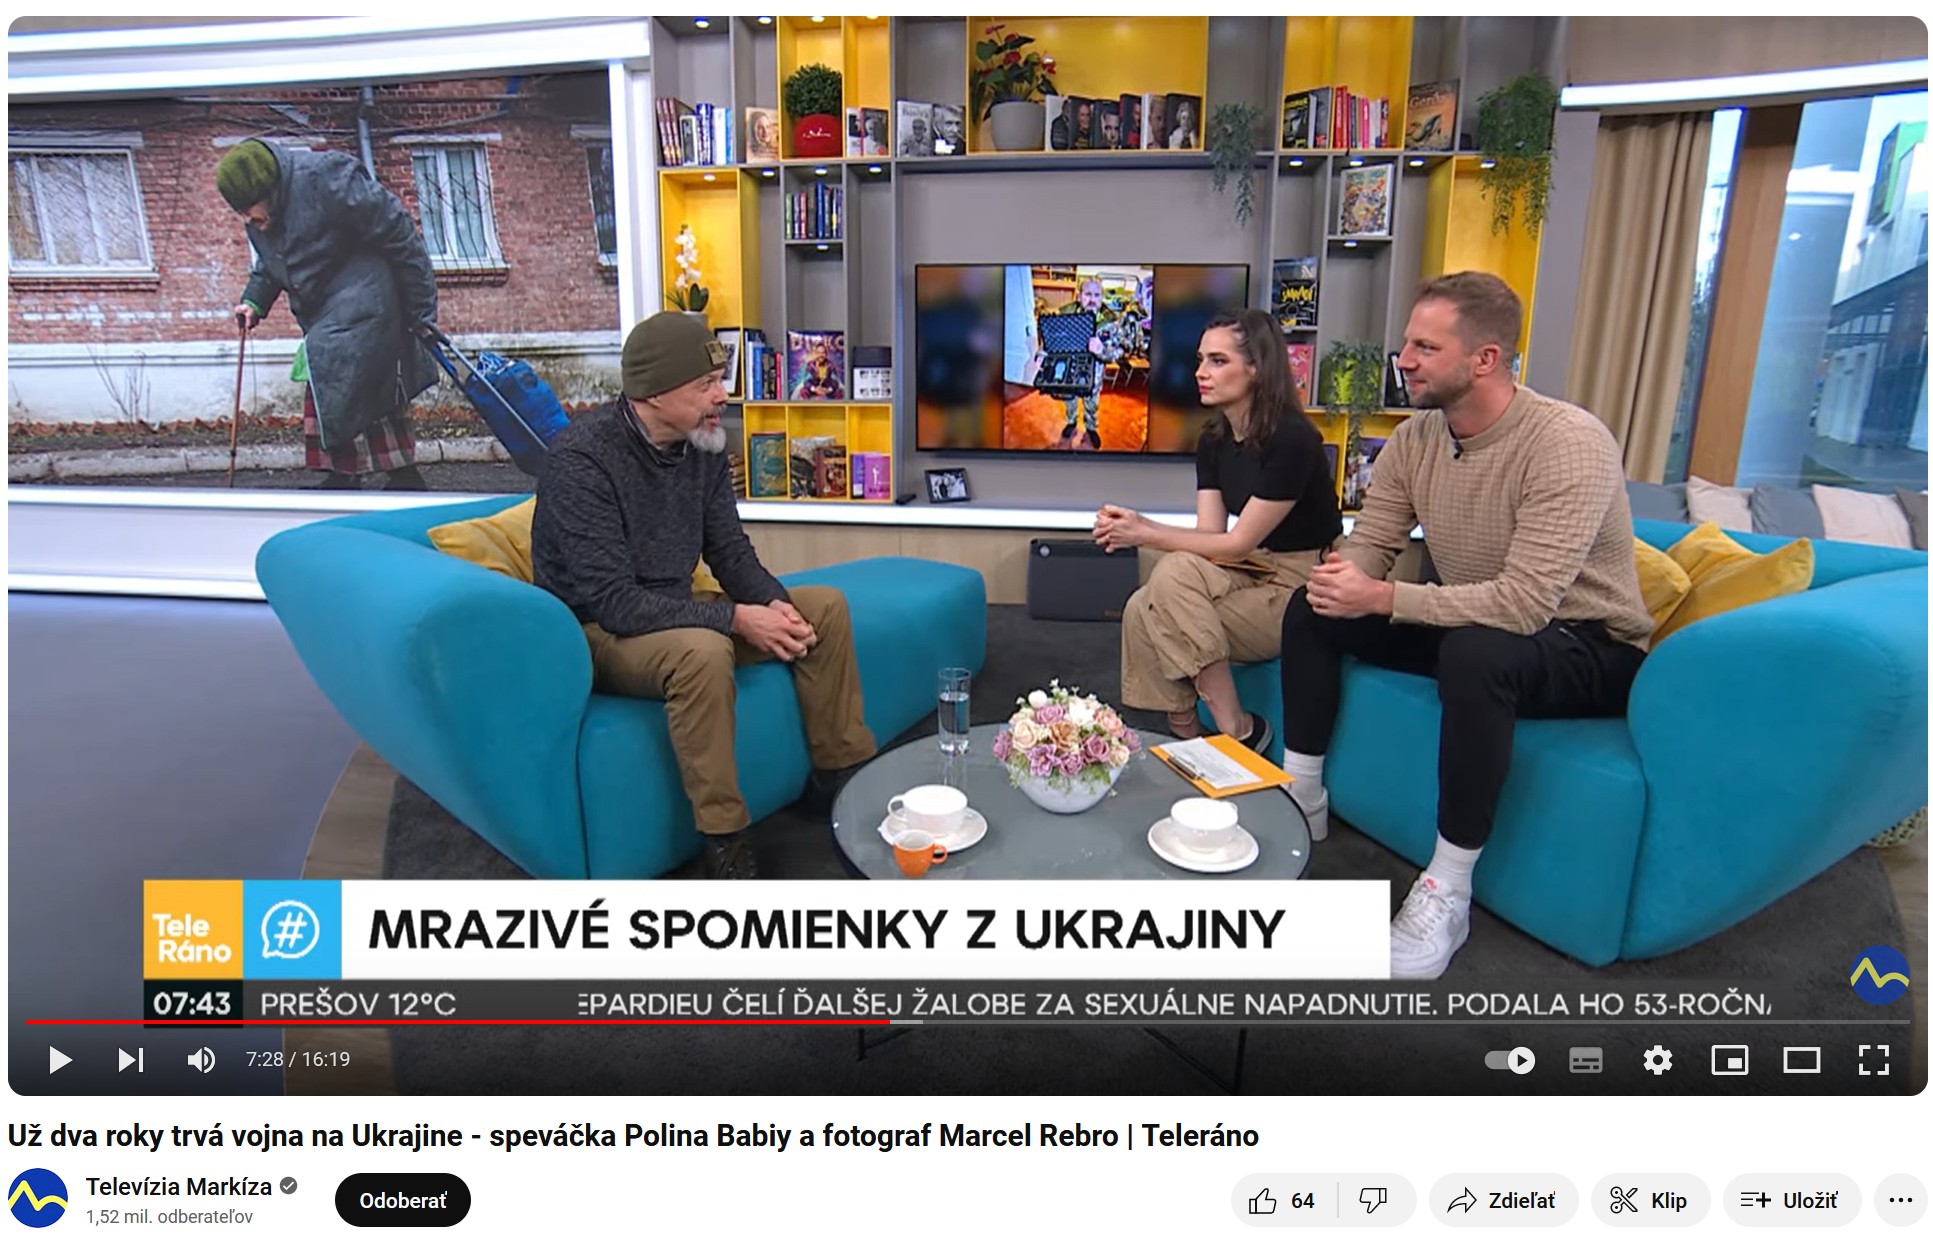 Už dva roky trvá vojna na Ukrajine – speváčka Polina Babiy a fotograf Marcel Rebro